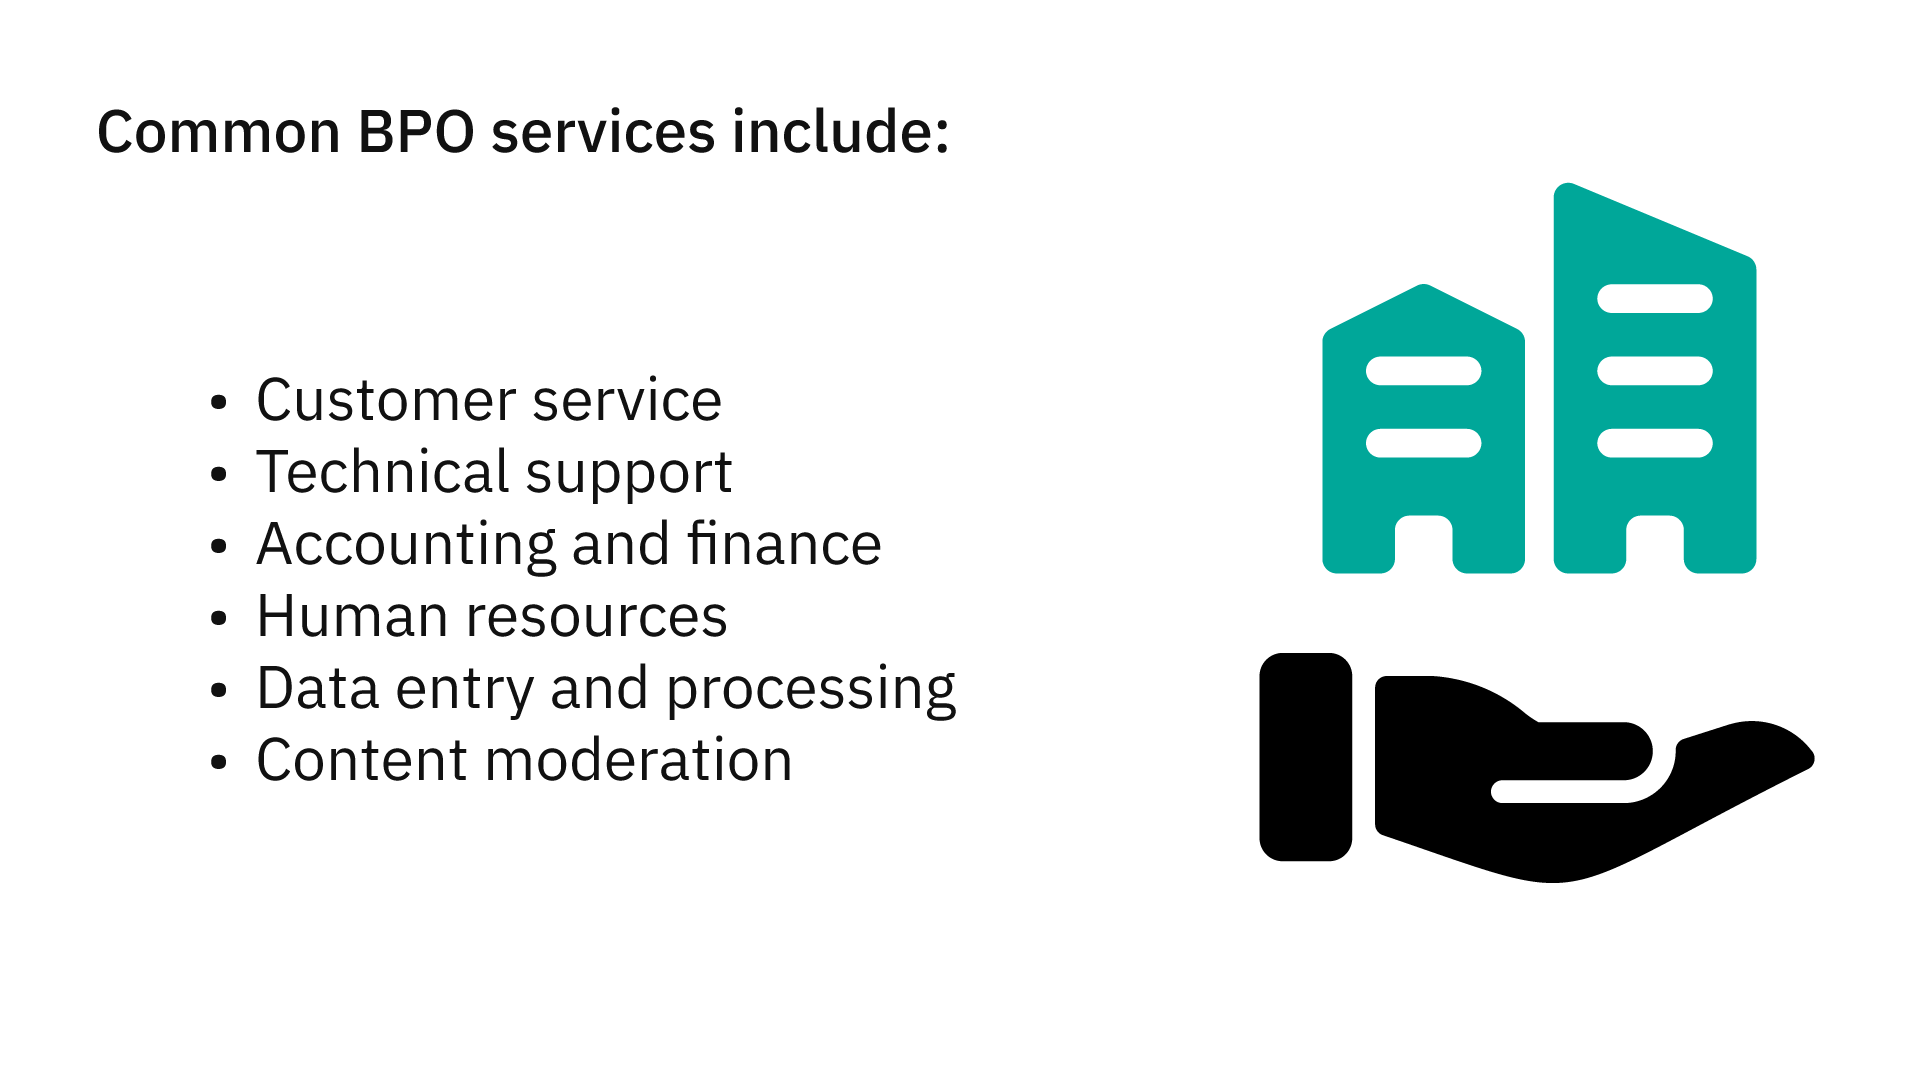 Common BPO services.